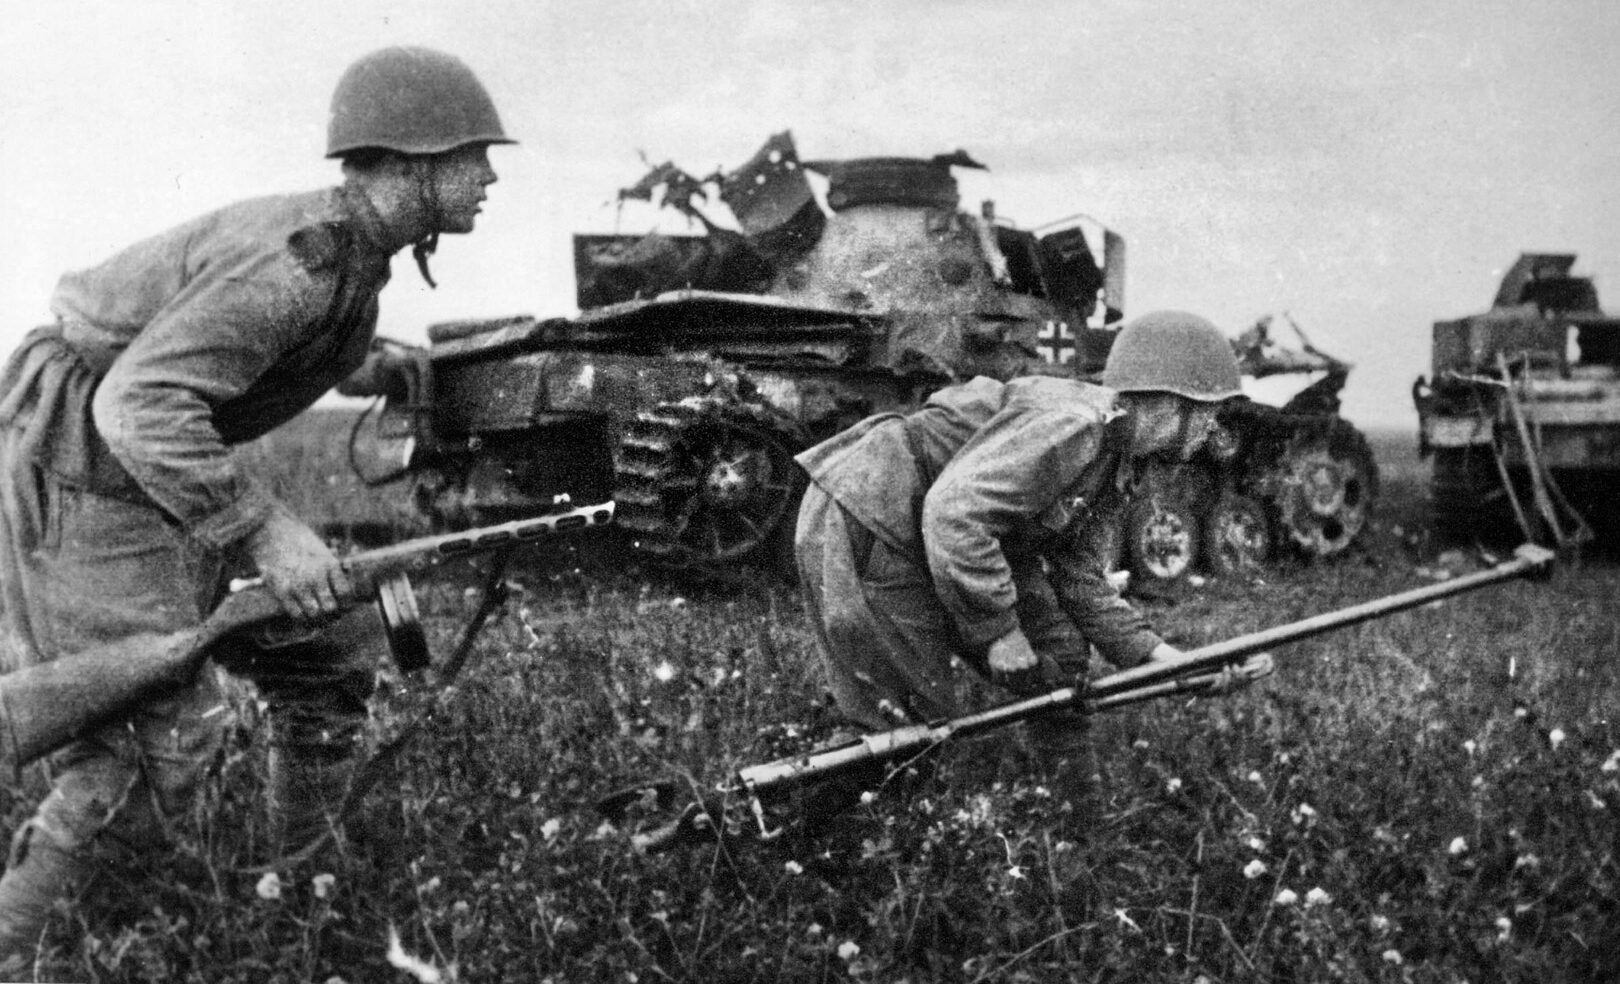 苏军步兵蹲着冲过德国坦克残破的残骸。右边的士兵拿着一支重型反坦克步枪，这种步枪对德国的中型和重型坦克毫无效果。